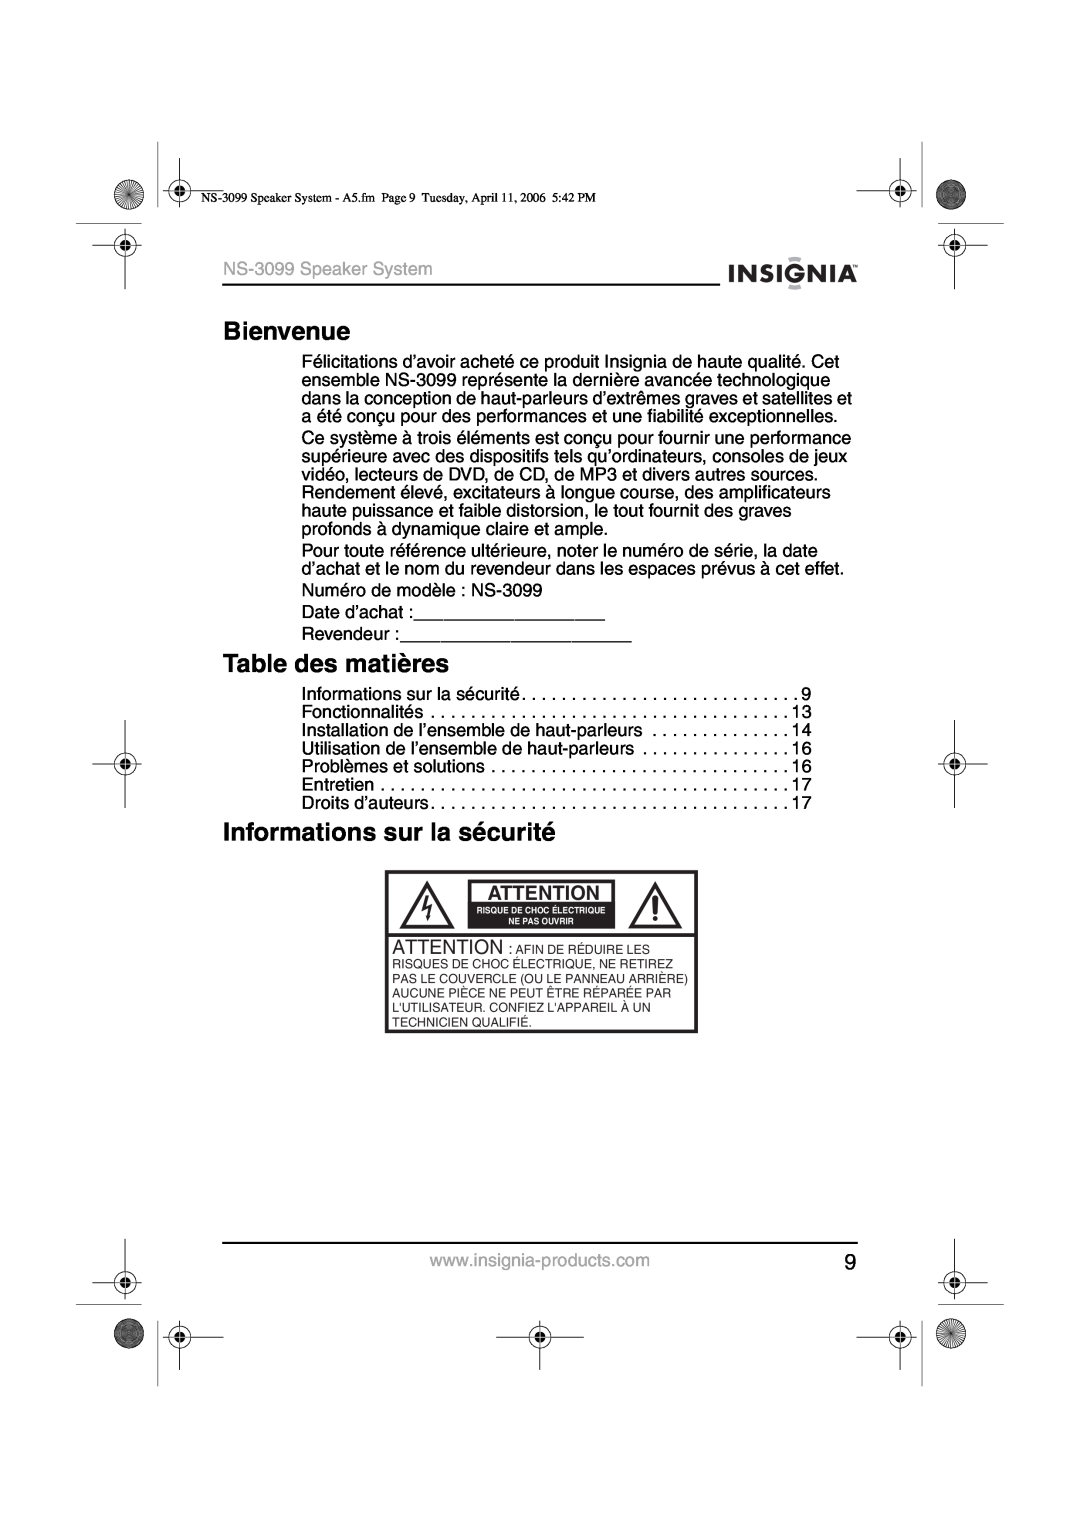 Insignia manual Bienvenue, Table des matières, Informations sur la sécurité, NS-3099Speaker System 